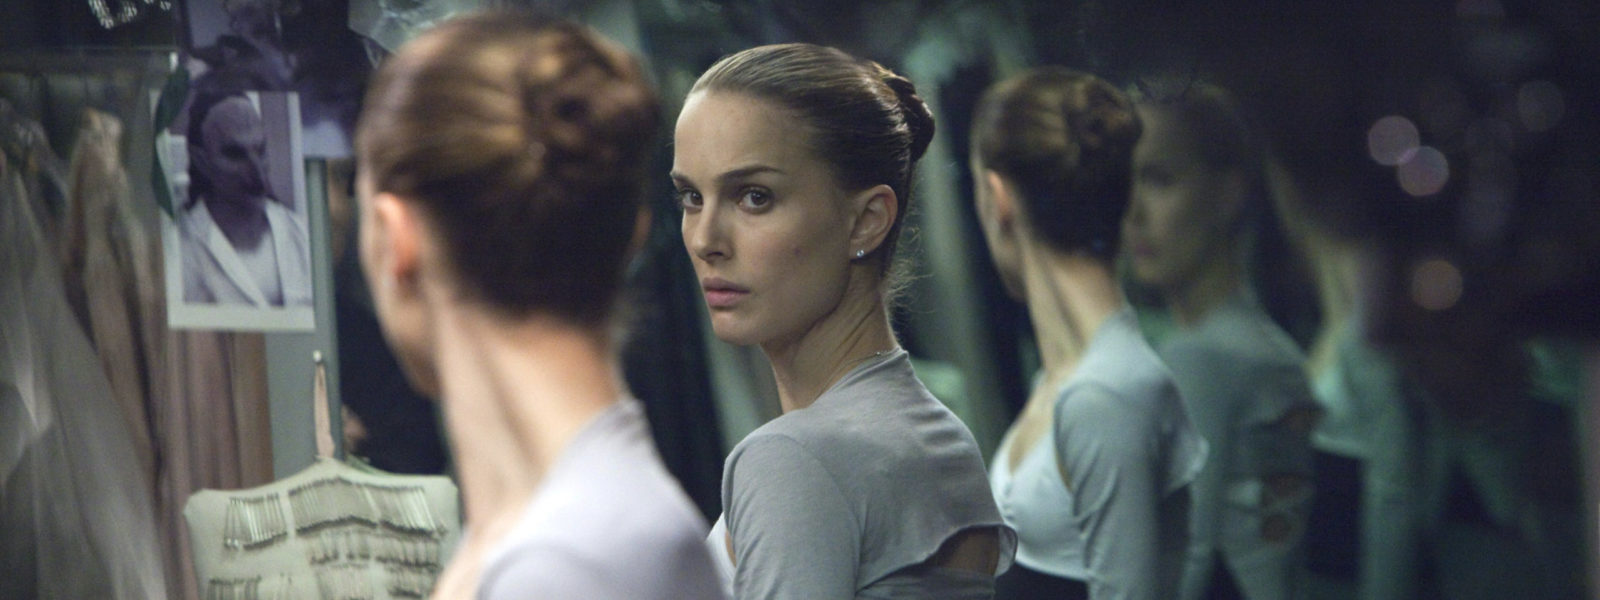 Natalie Portman in Black Swan, Darren Aronofsky